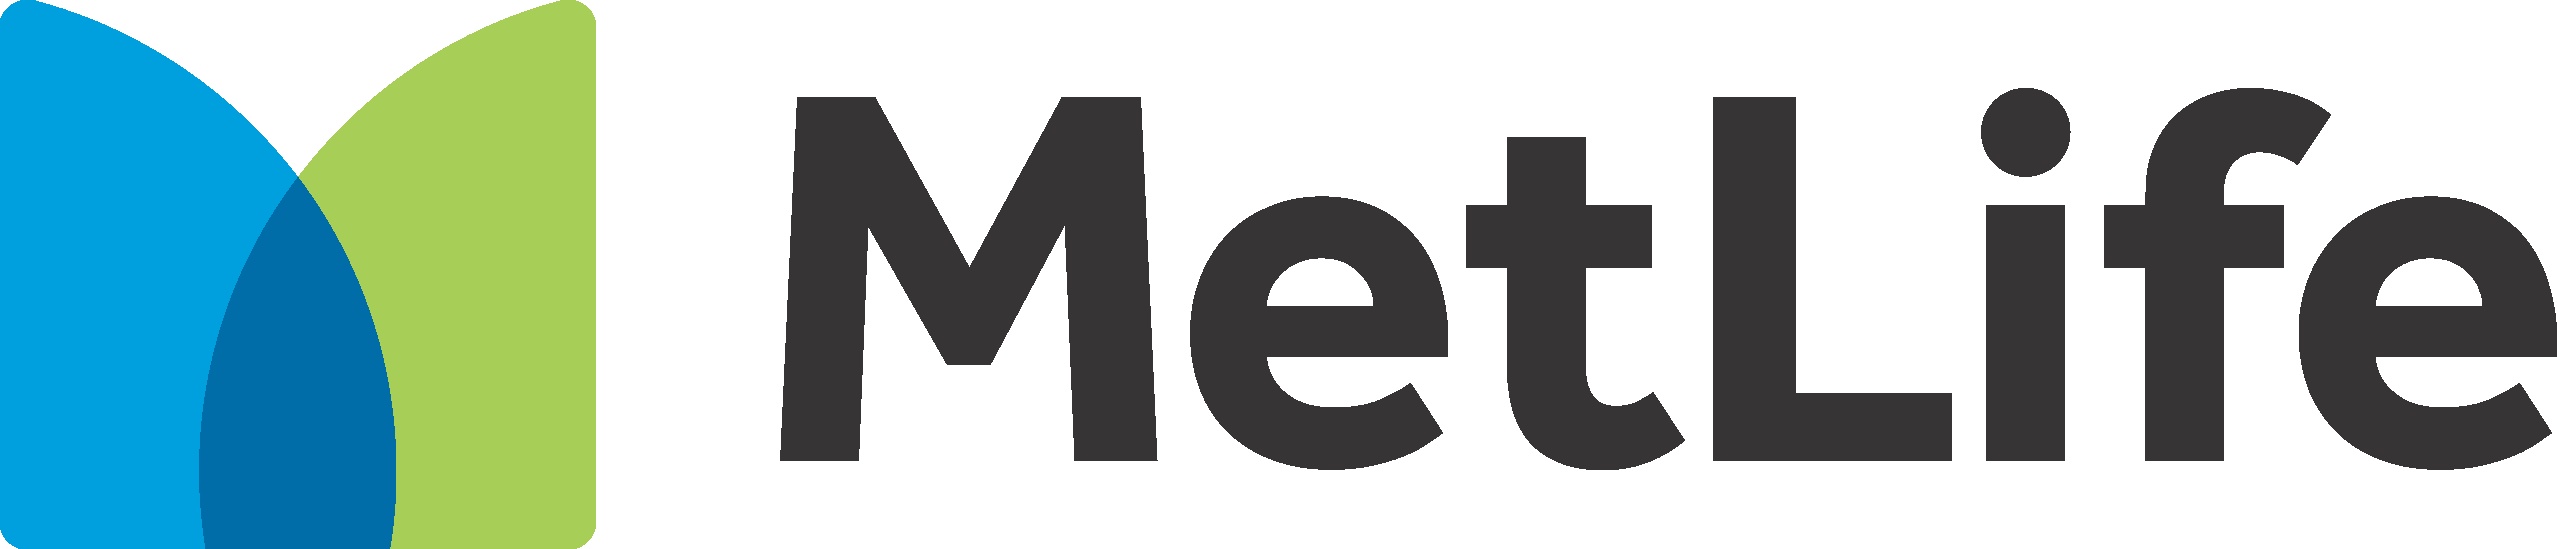 MetLife Pet Insurance - SEM